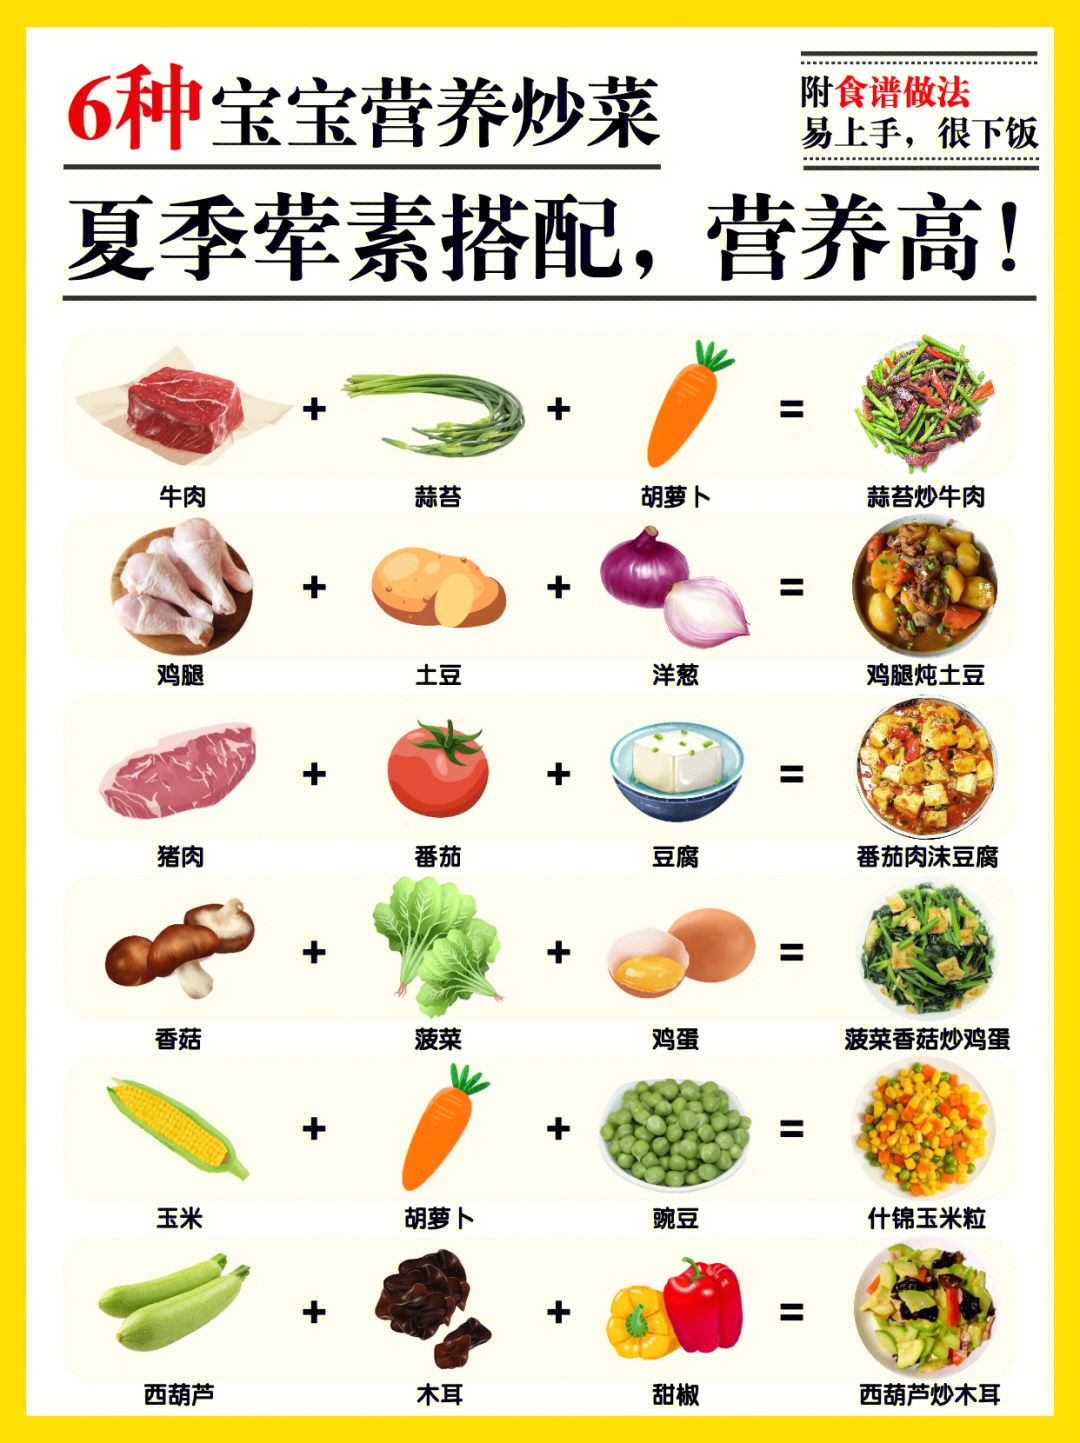 夏季宝宝营养炒菜73荤素搭配73下饭开胃